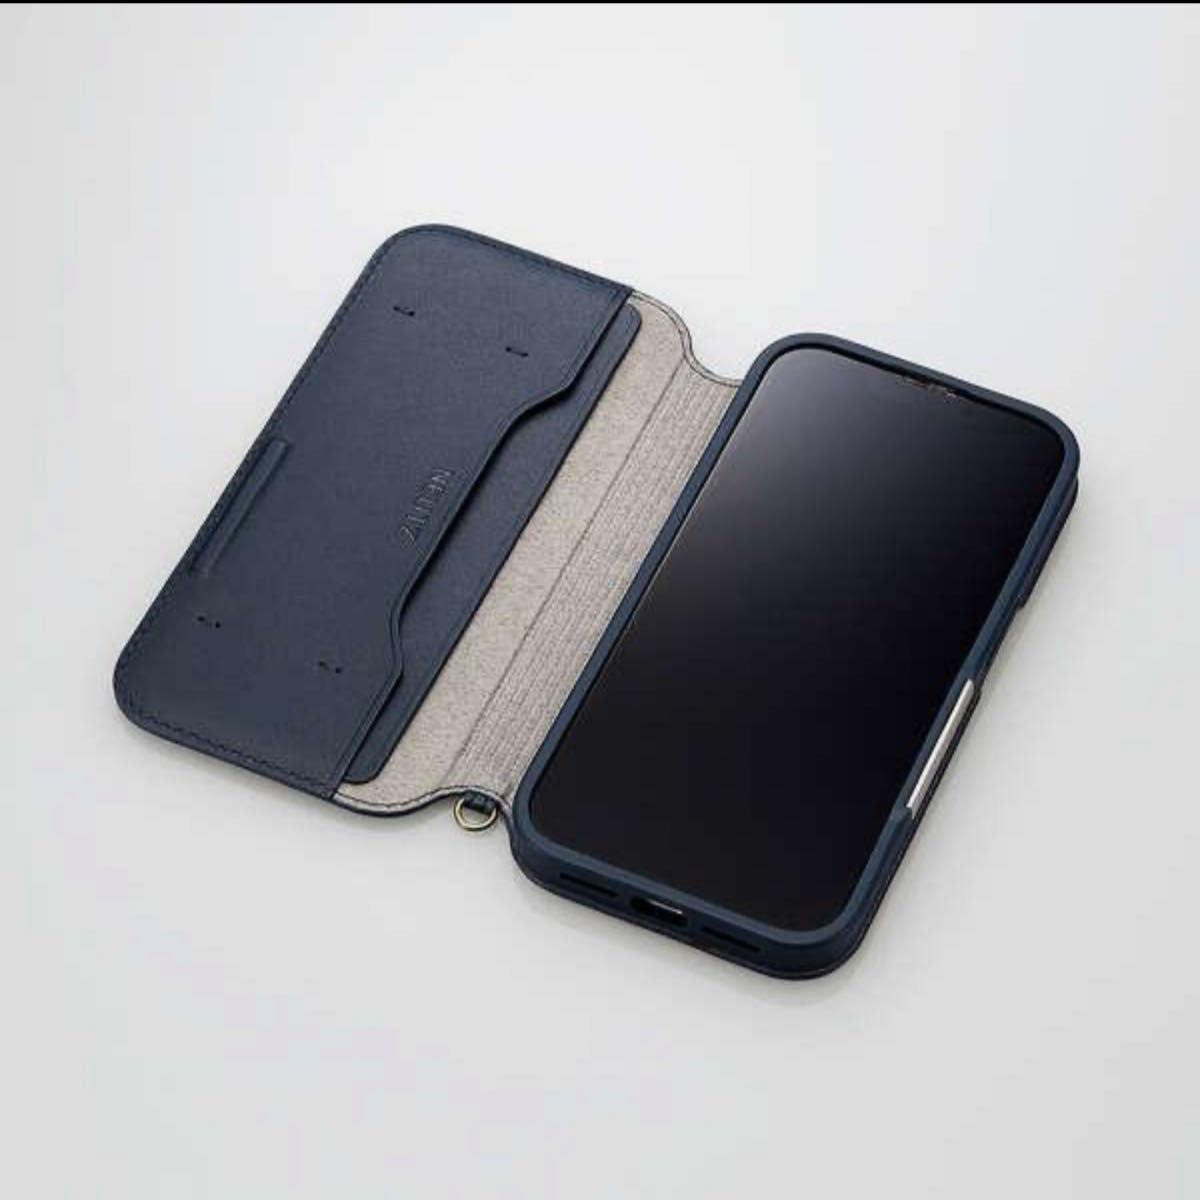 【新品未使用】iPhone14 Pro ソフトレザーケース 磁石付 NEUTZ 6.1インチ ブラック ELECOM